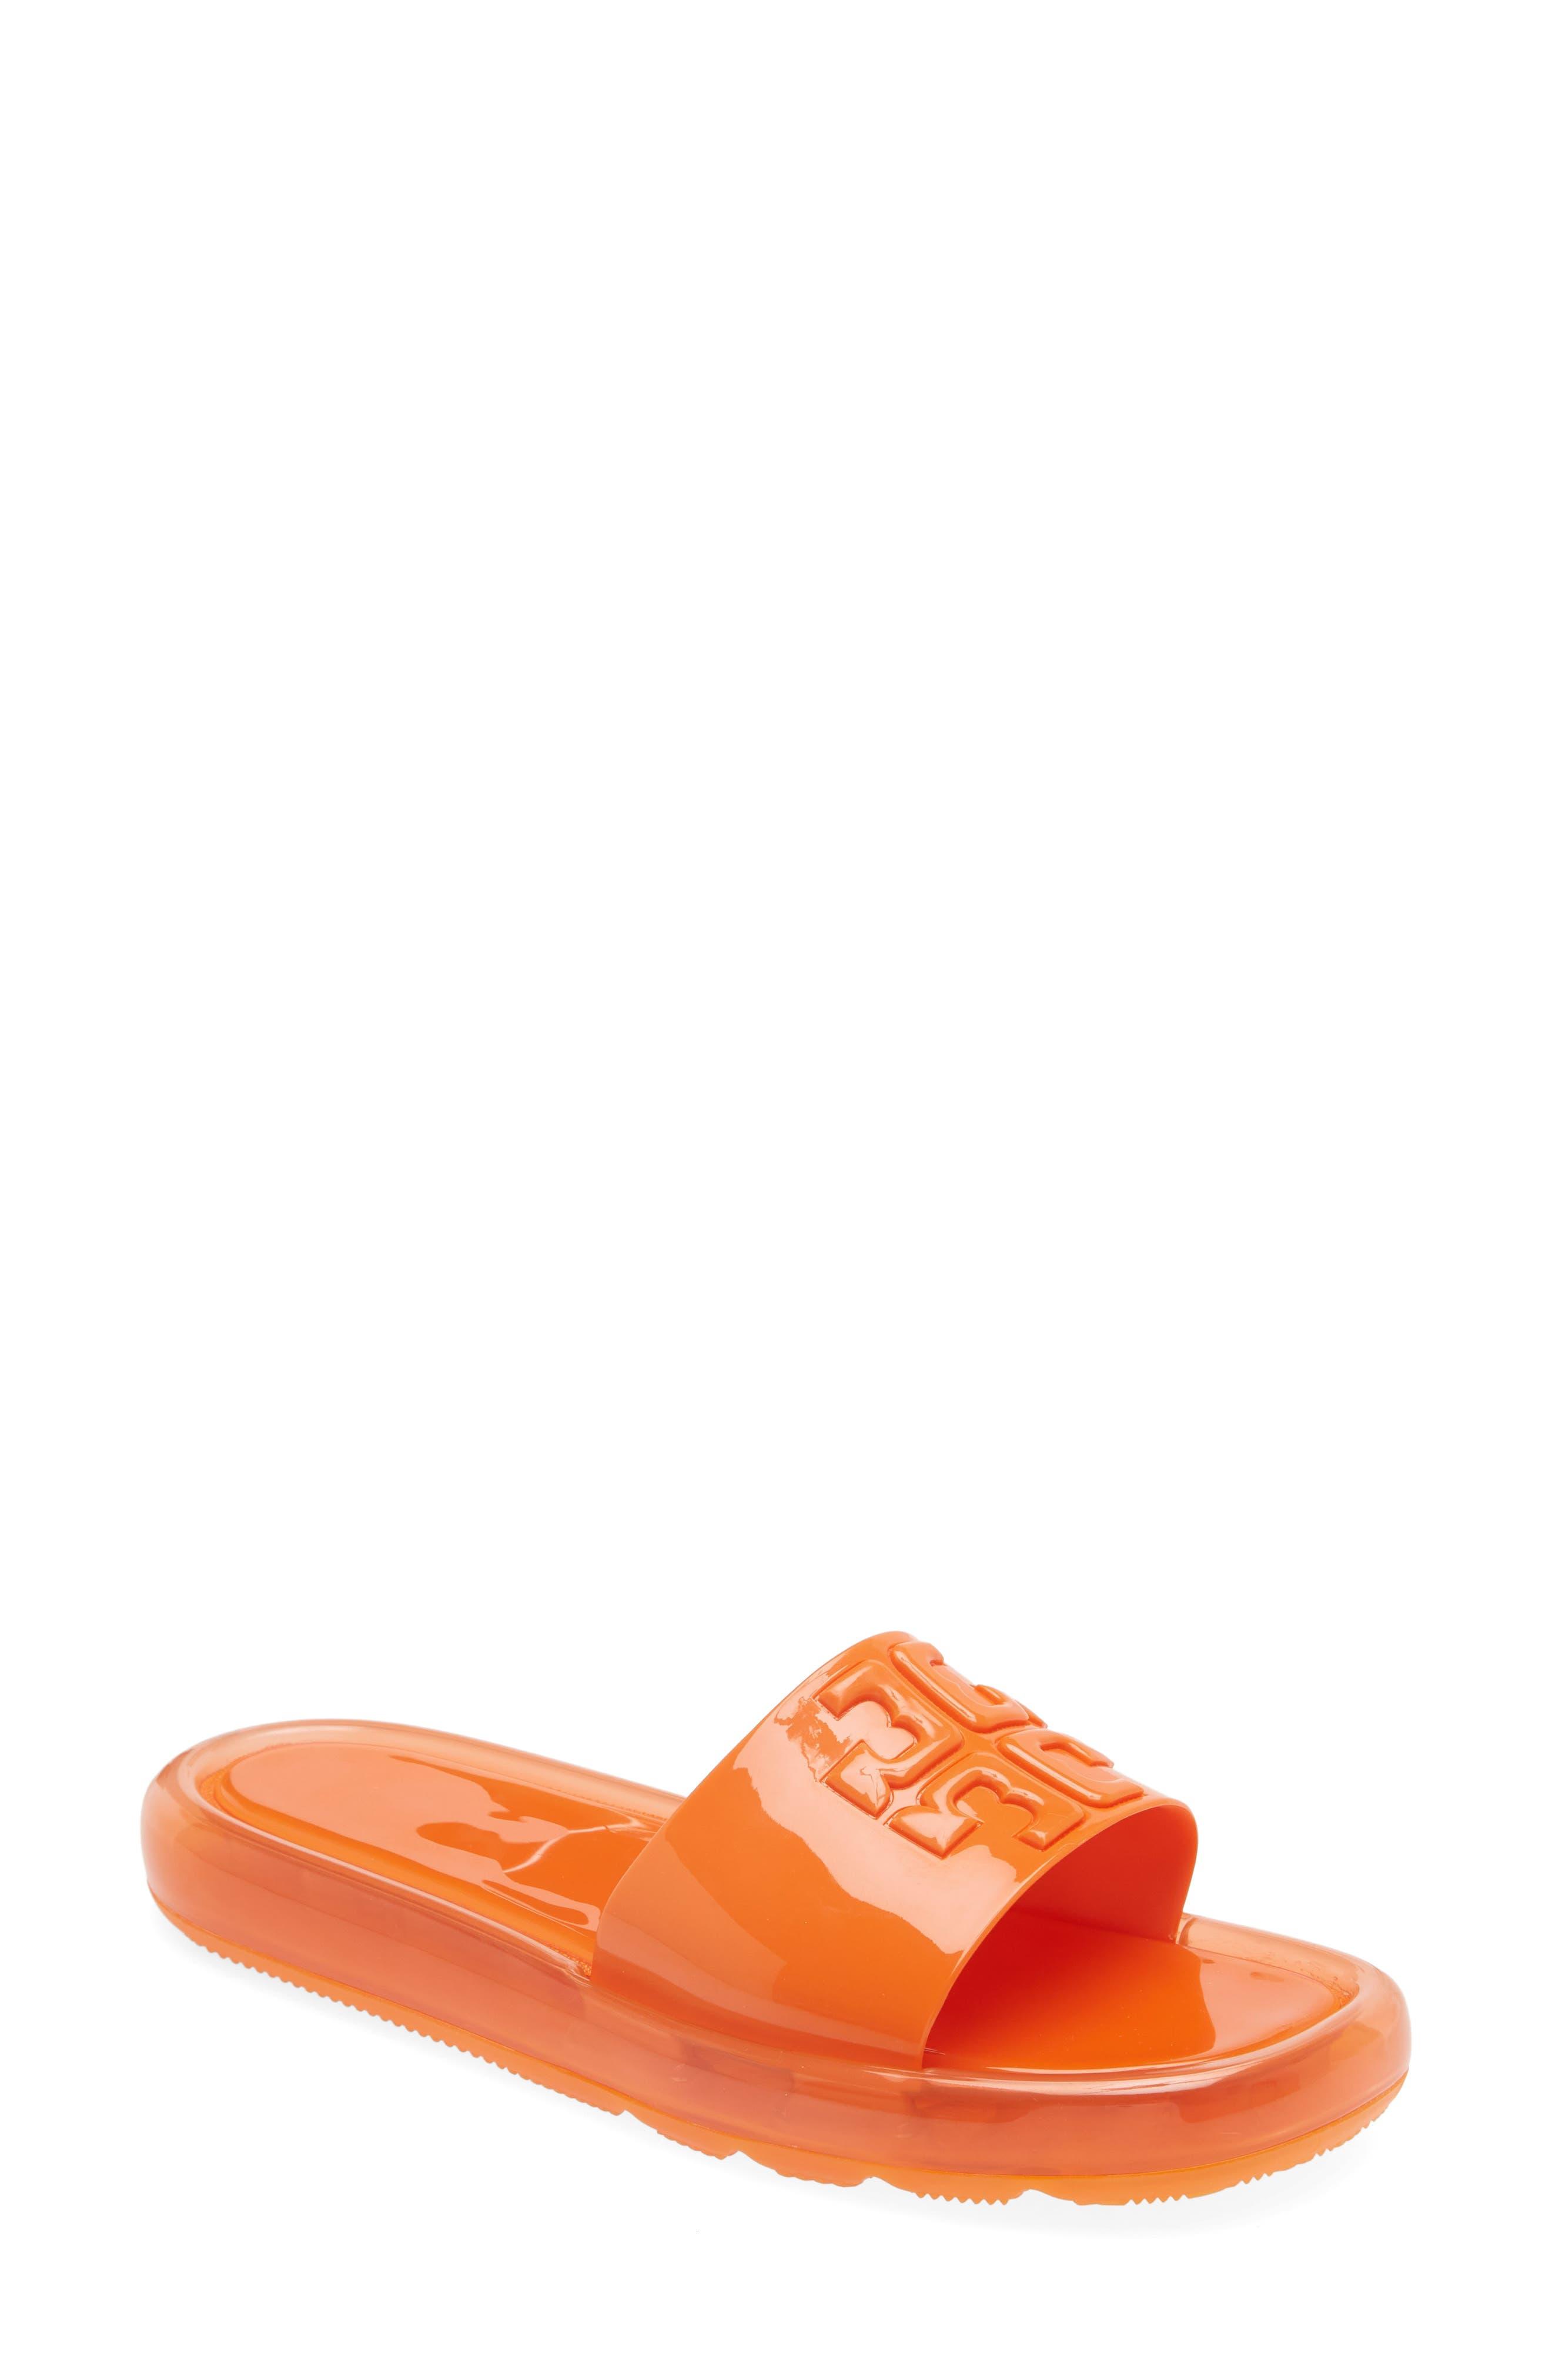 Tory Burch Bubble Jelly Slide Sandal in Orange | Lyst